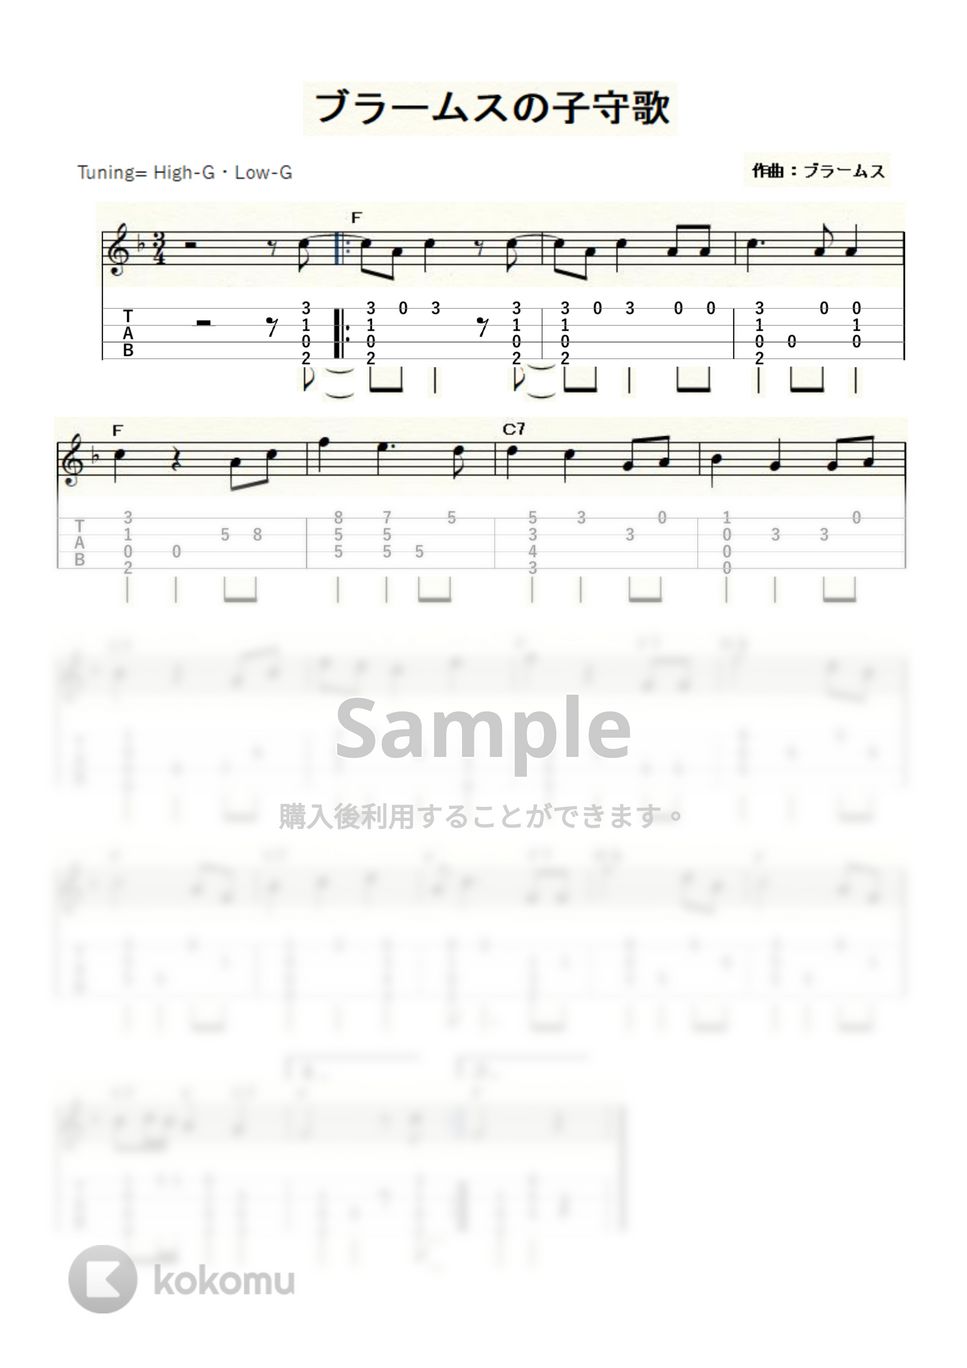 ブラームス - ブラームスの子守歌 (ｳｸﾚﾚｿﾛ / High-G・Low-G / 中級) by ukulelepapa